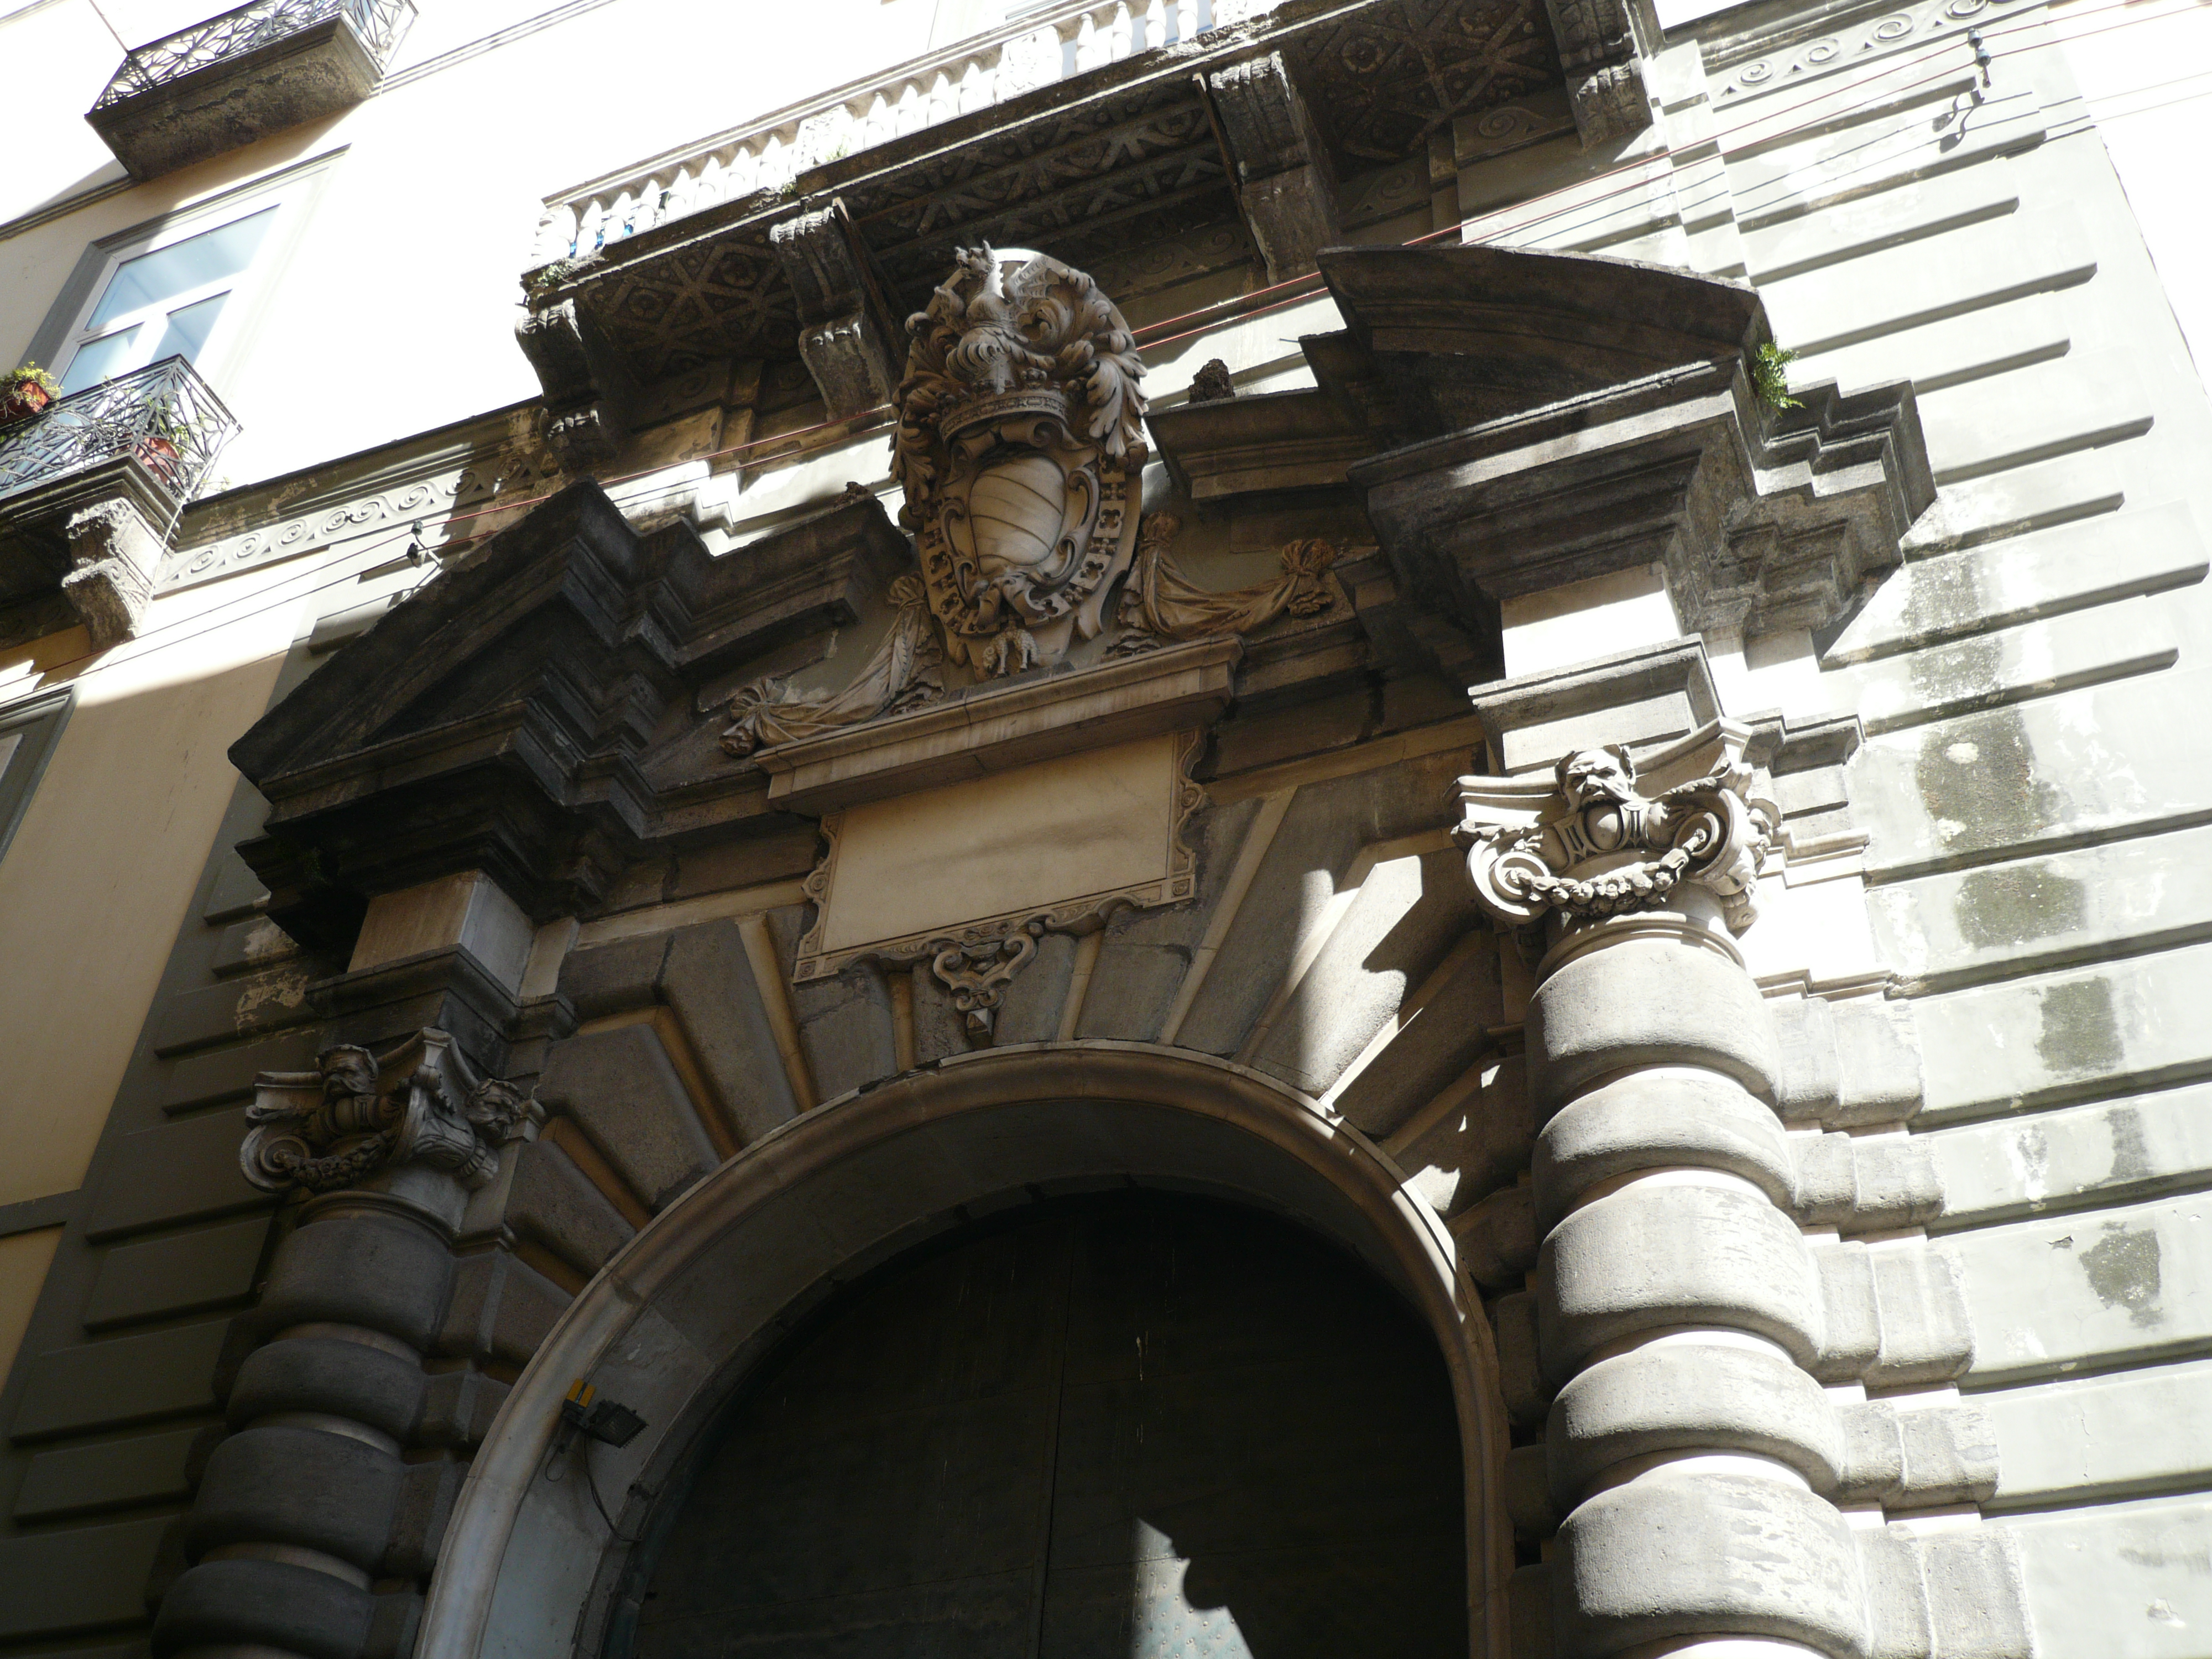 Roberto De Martino, Decorazioni scultoree sull' ingresso del Palazzo di Sangro, 2011, fotografia digitale